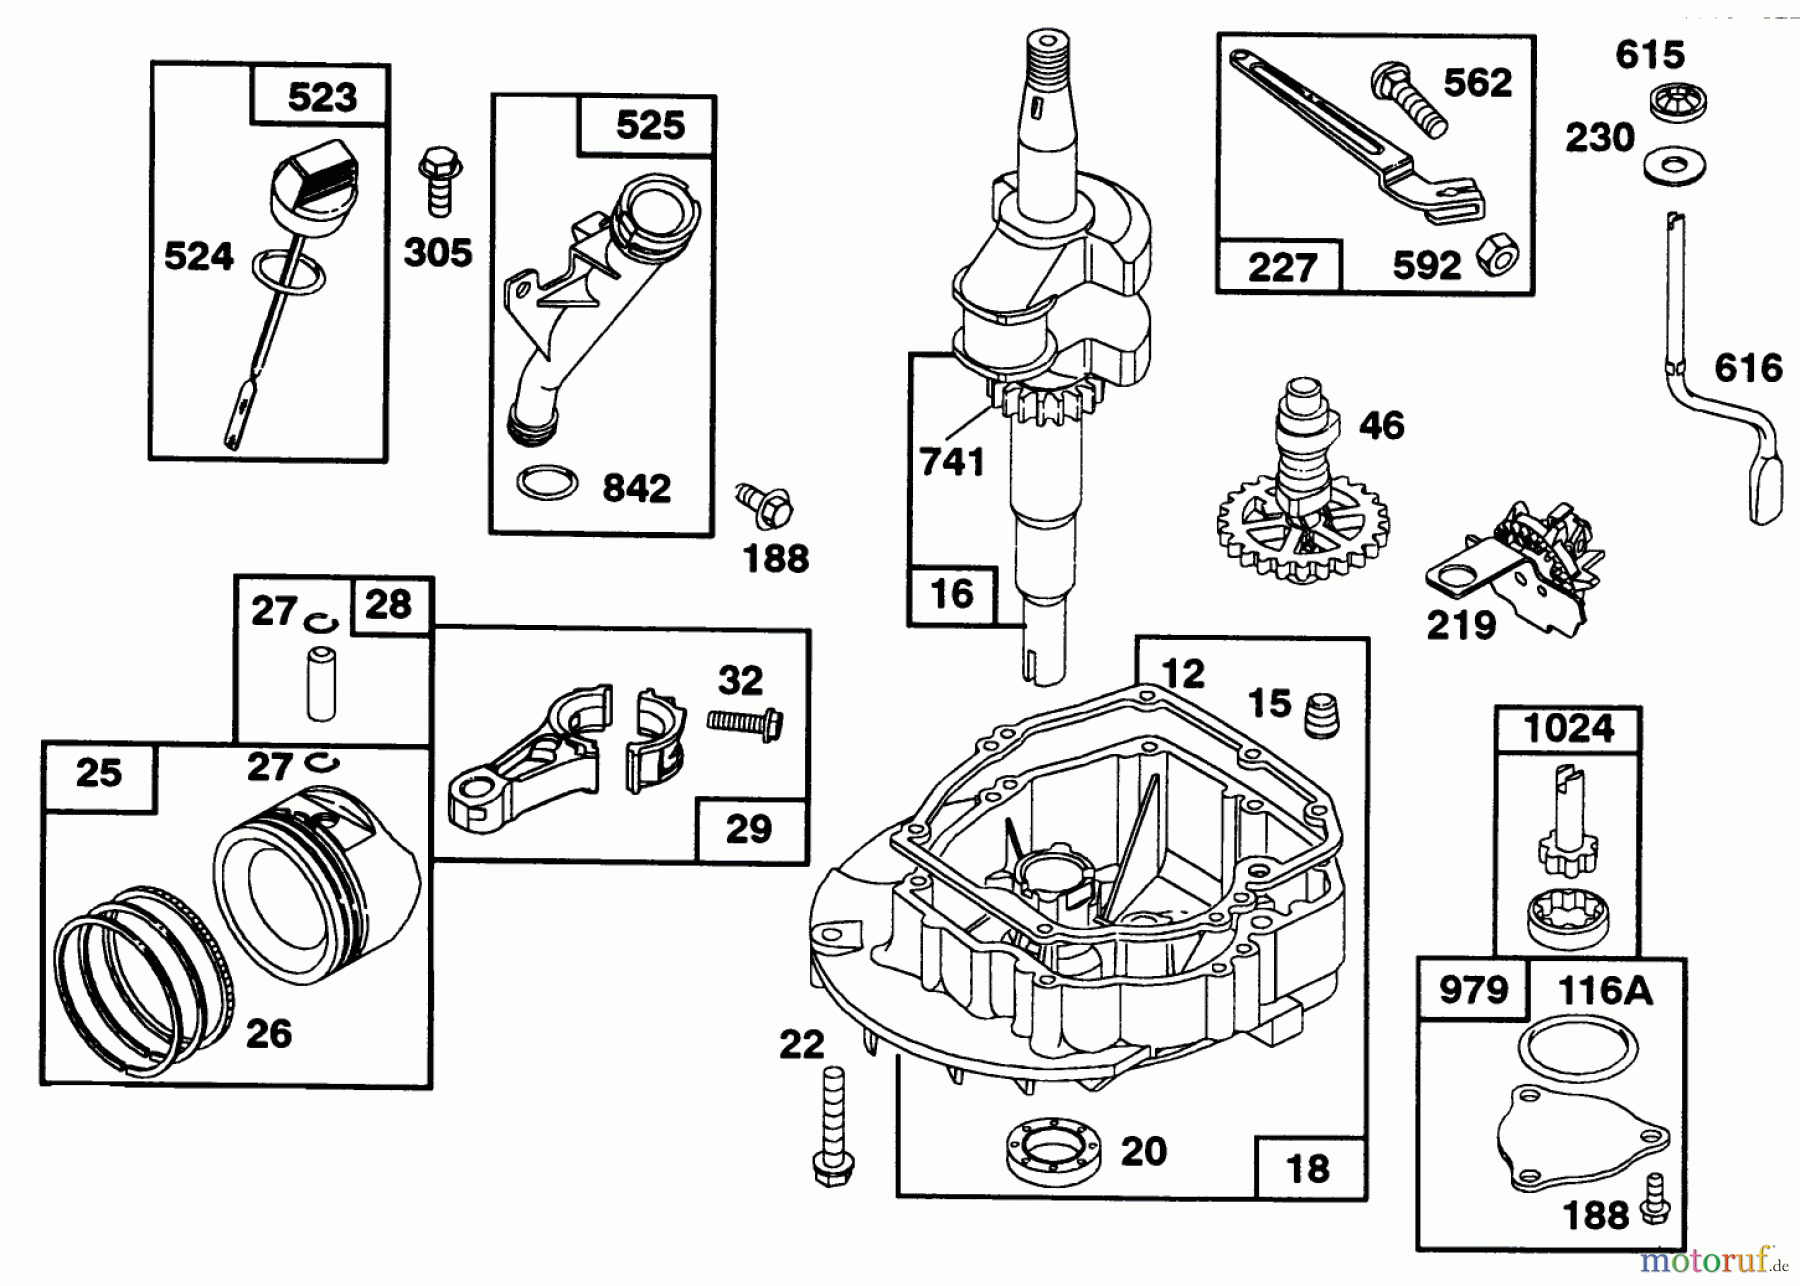  Toro Neu Mowers, Walk-Behind Seite 2 22151 - Toro Lawnmower, 1992 (2000001-2999999) ENGINE GTS 150 77-9140 #2